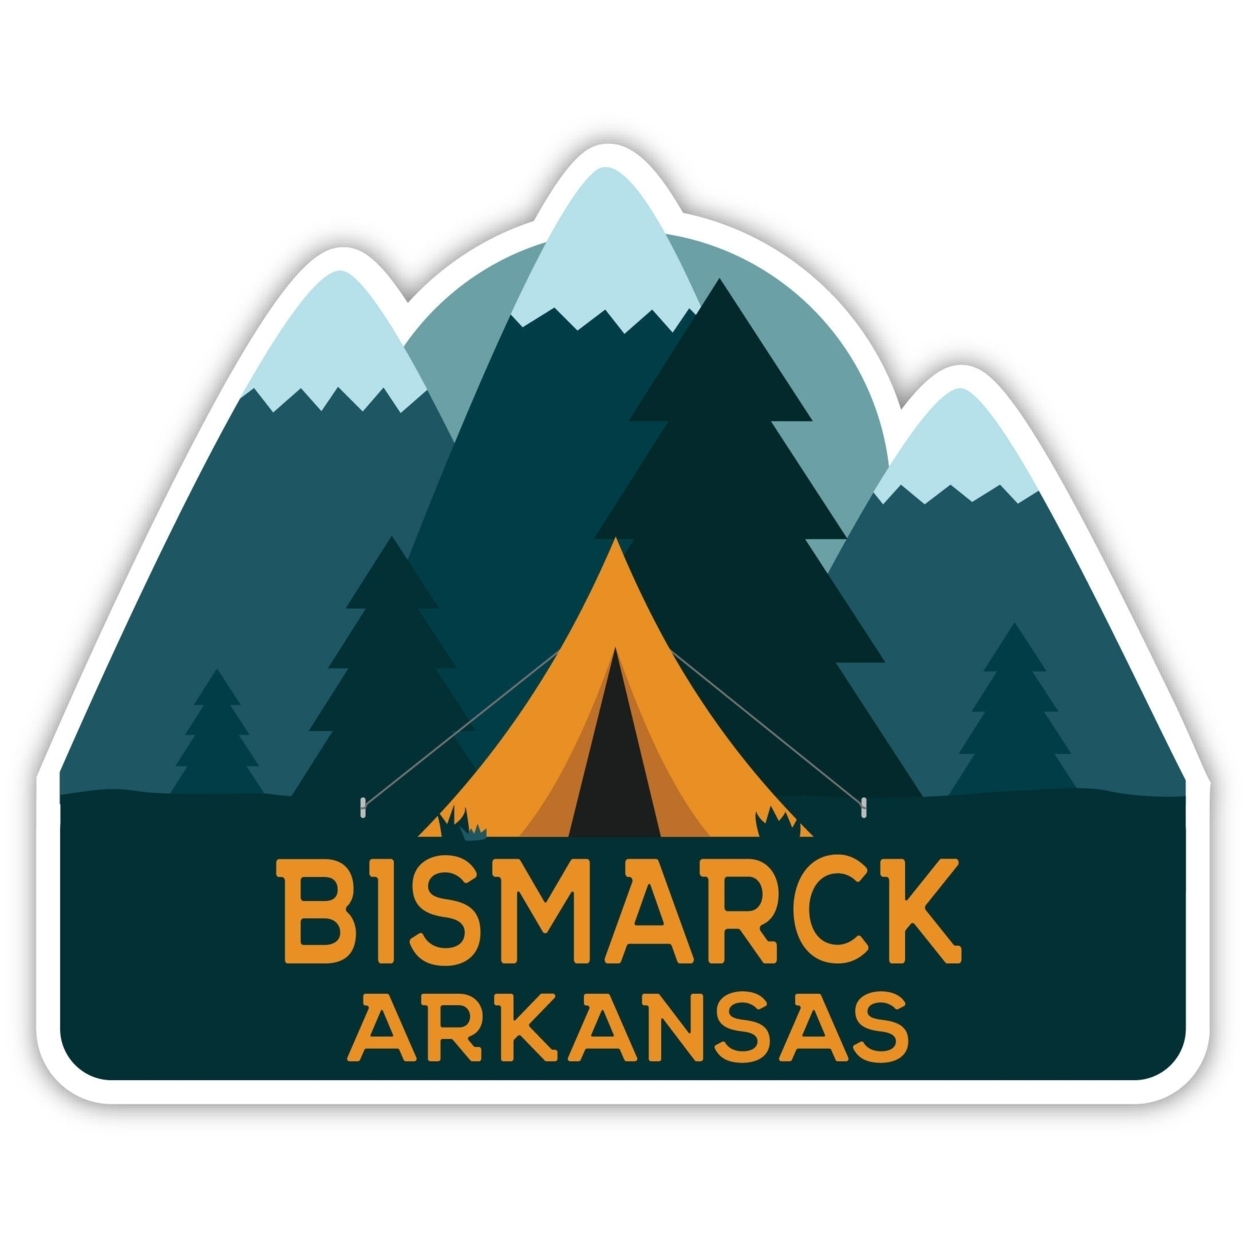 Bismarck Arkansas Souvenir Decorative Stickers (Choose Theme And Size) - Single Unit, 12-Inch, Tent